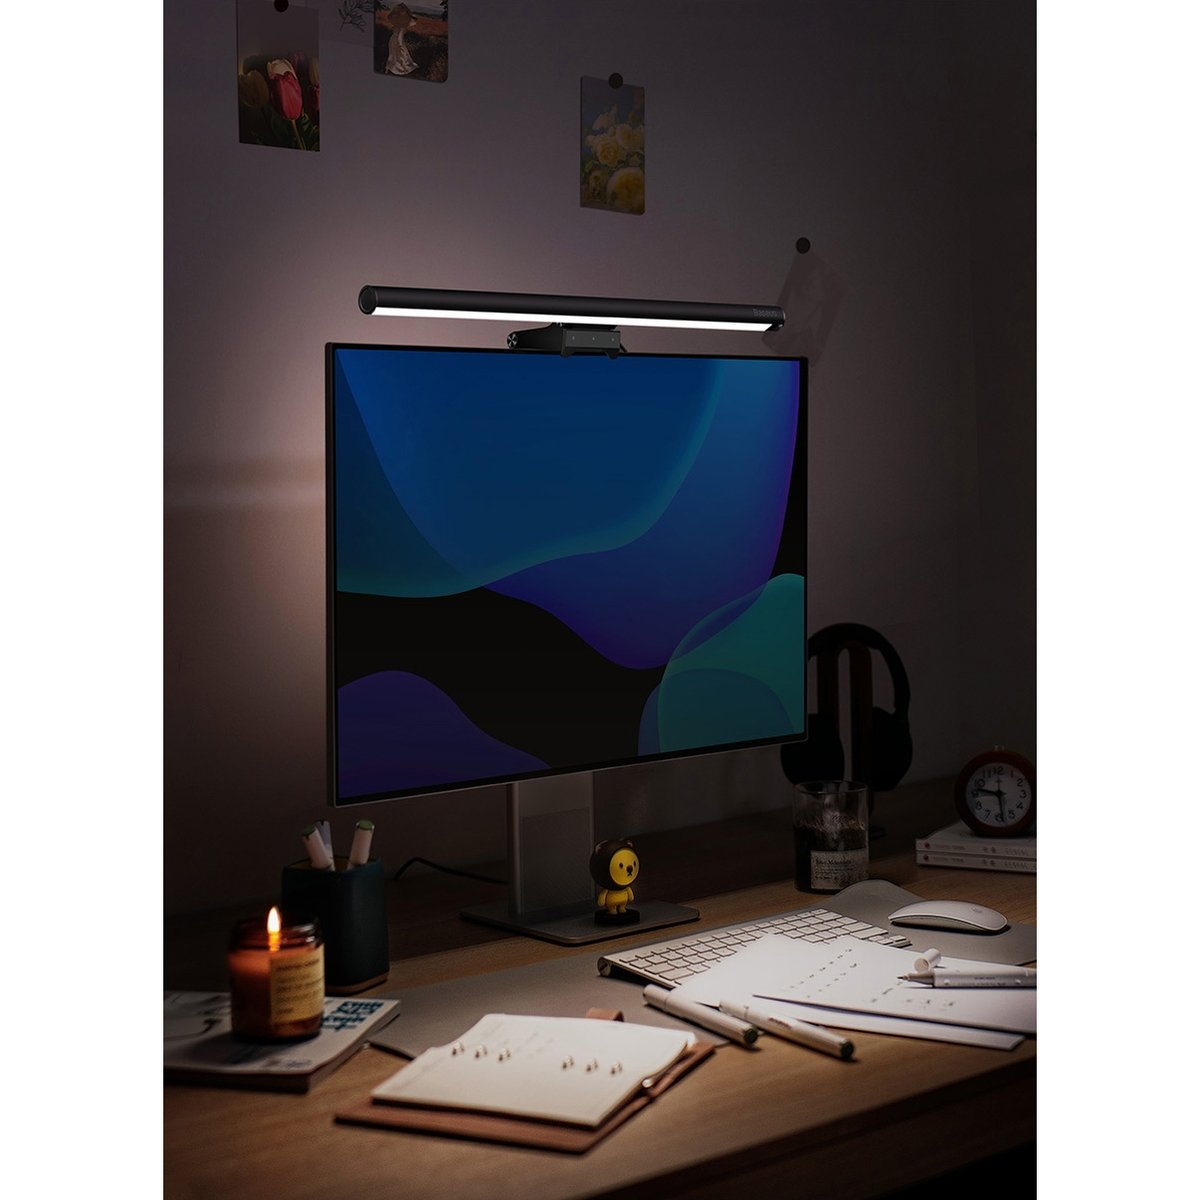 Baseus i-wok2 LED lamp for desktop monitor screen lighting black (DGIW000101)